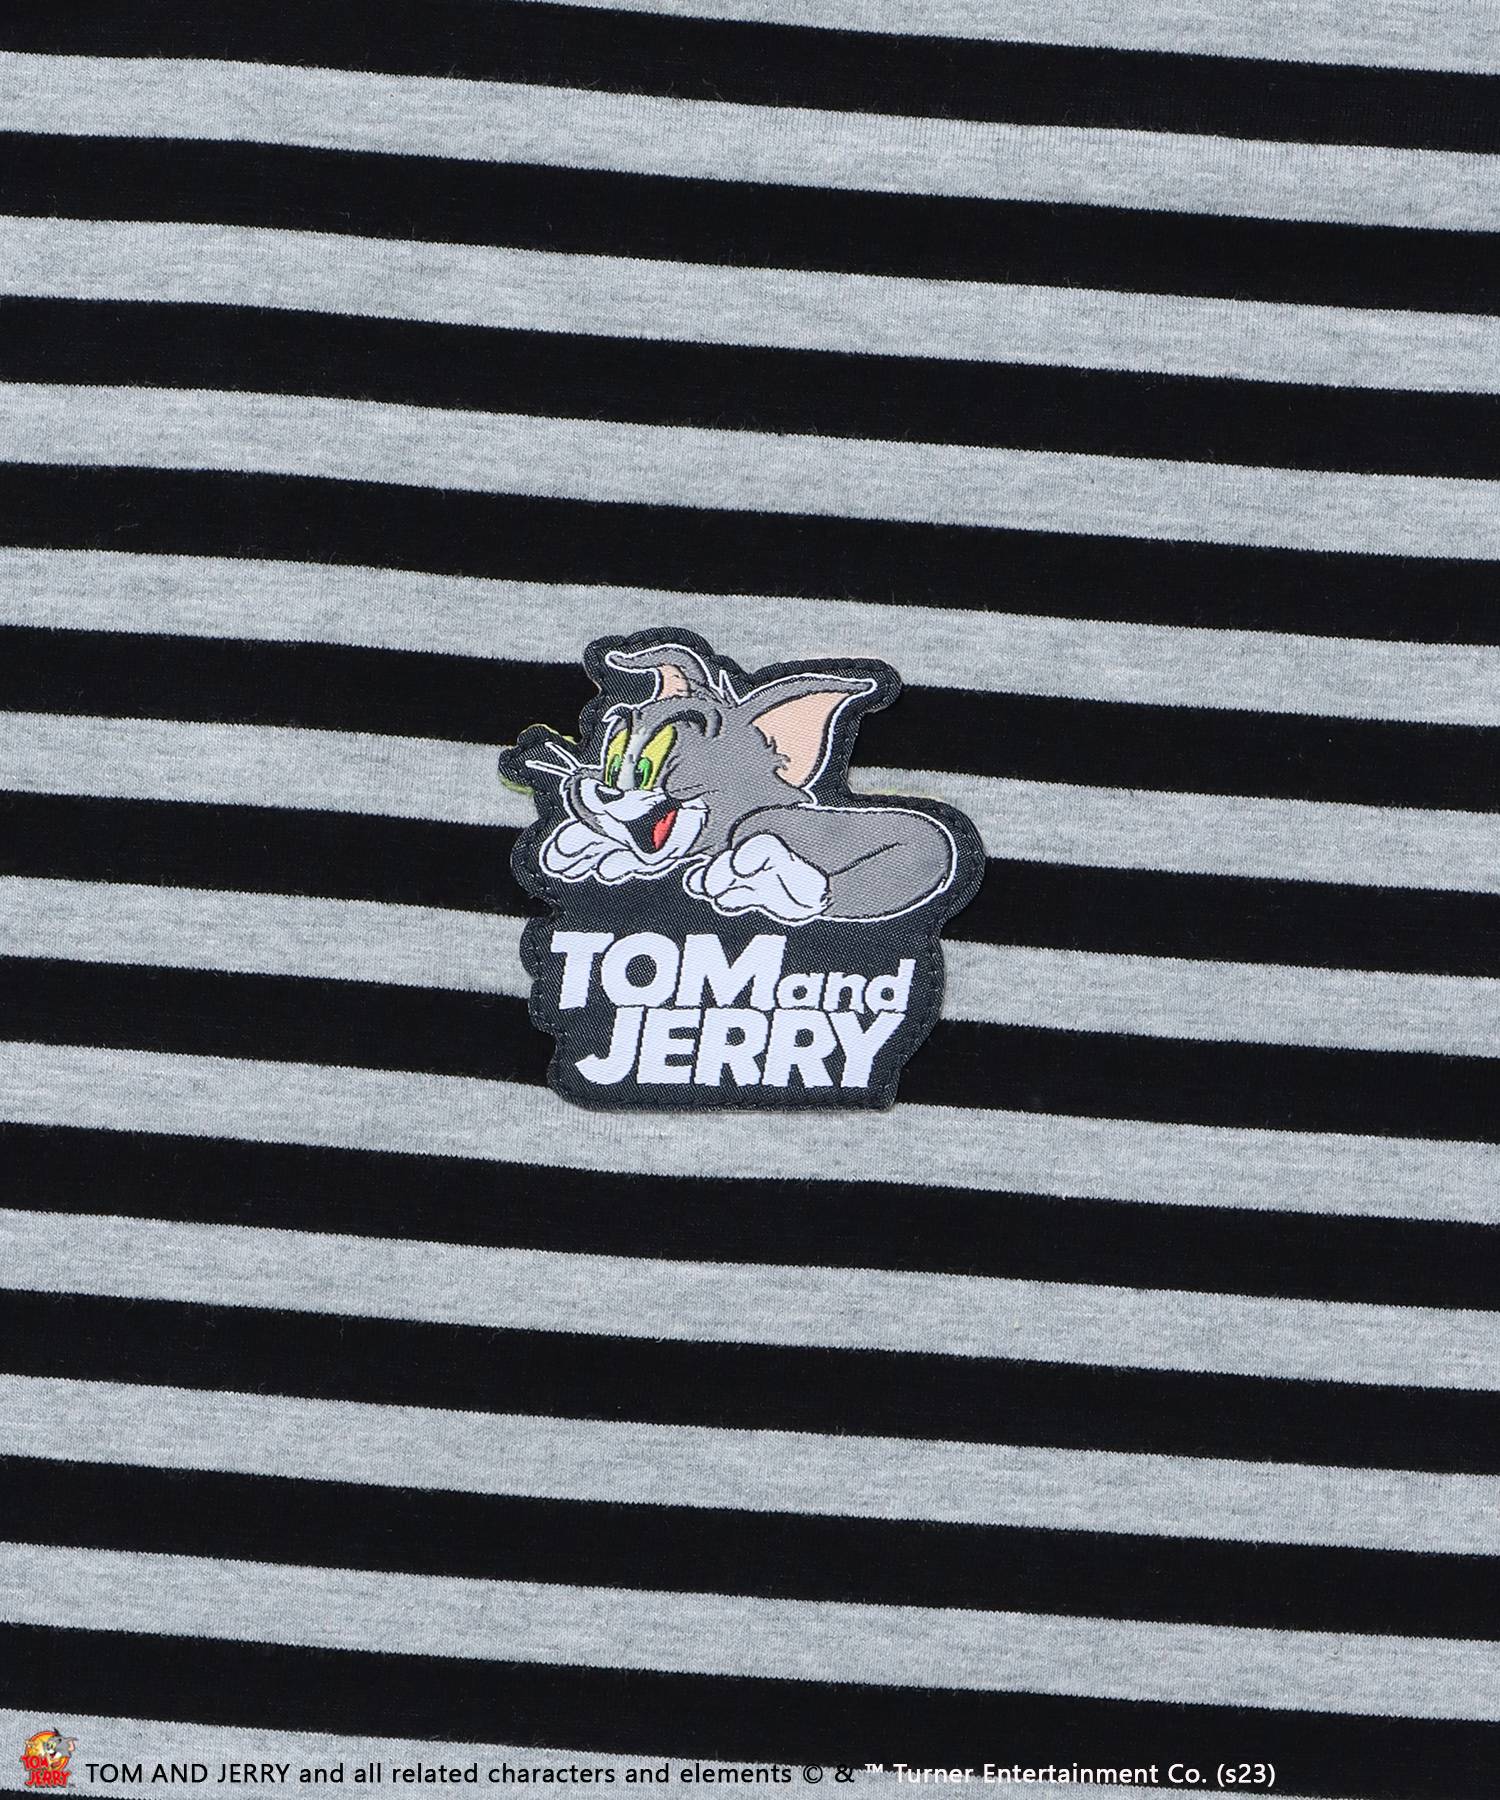 【SEQUENZ】 TOM and JERRY BORDER L/S TEE / トムとジェリー ロンT ビックサイズ キャラクター 刺繍 リンガー Tシャツ ブラック